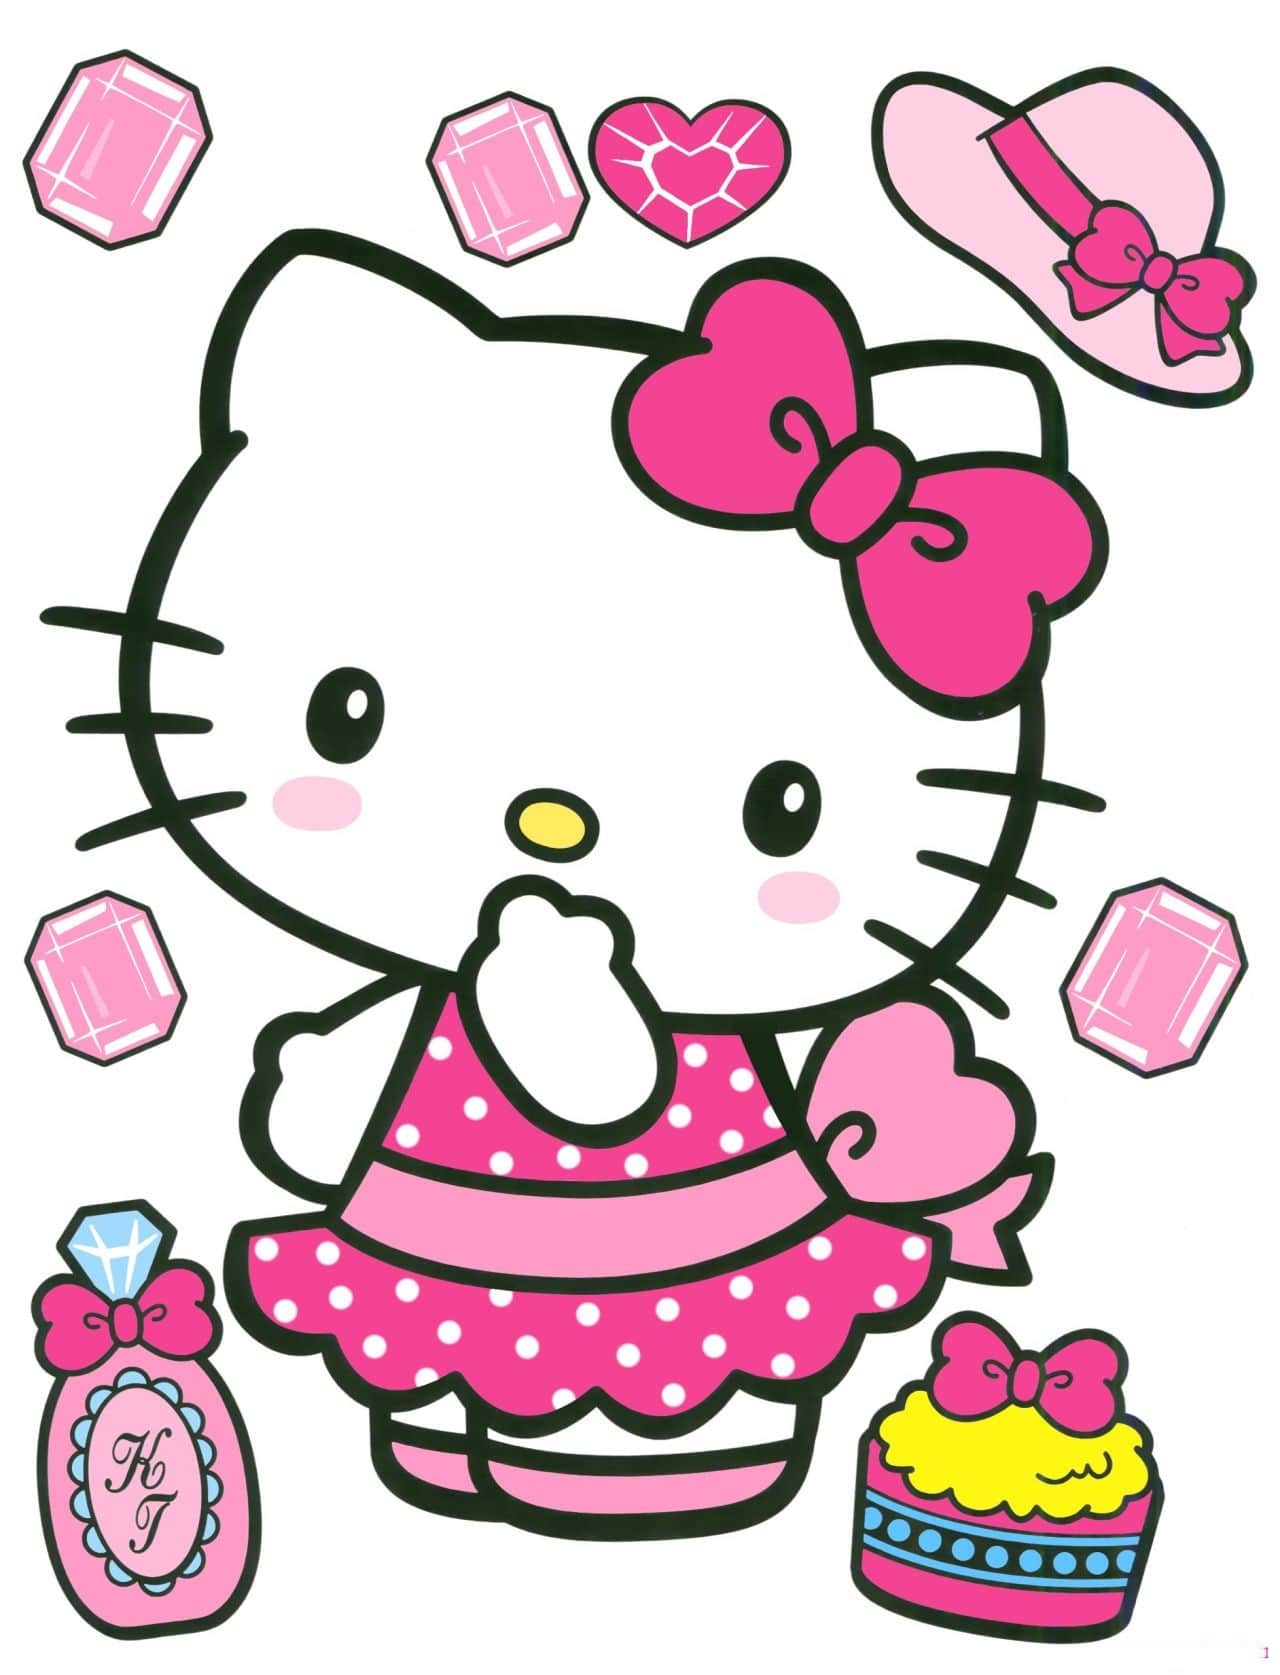 Hình Ảnh Hello Kitty Đẹp Xinh Cute Dễ Thương Vô Cùng Tận